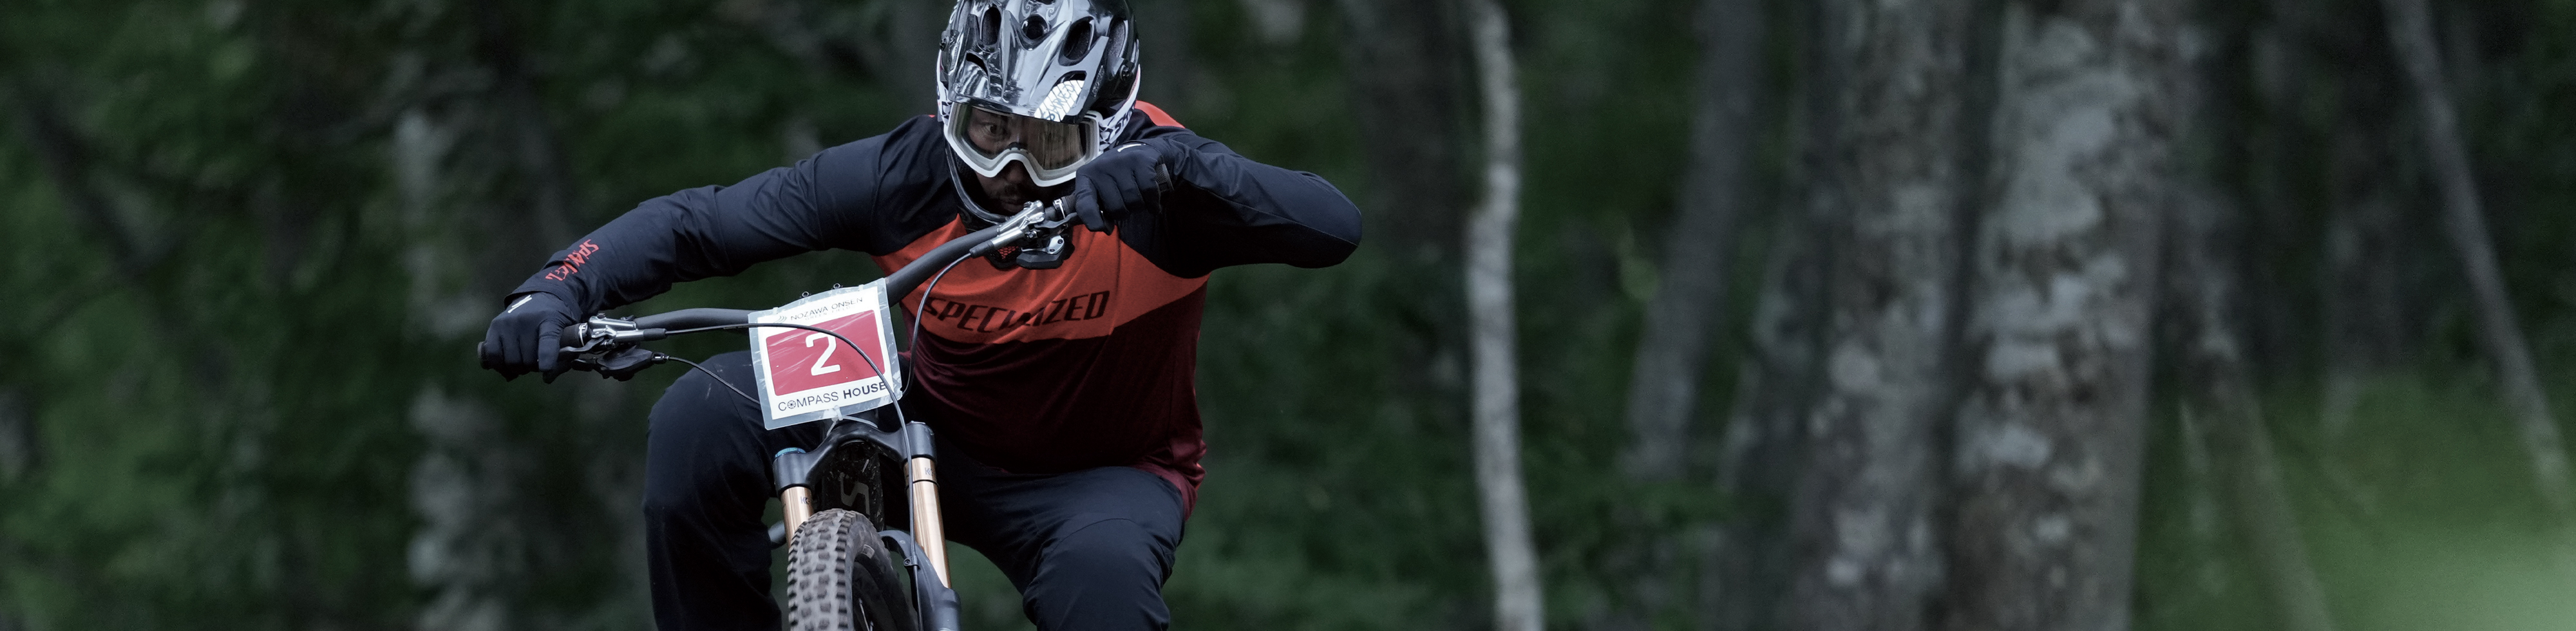 Пример изображения мотоциклиста в фокусе, находящегося в движении на соревновании, на фоне леса с эффектом боке